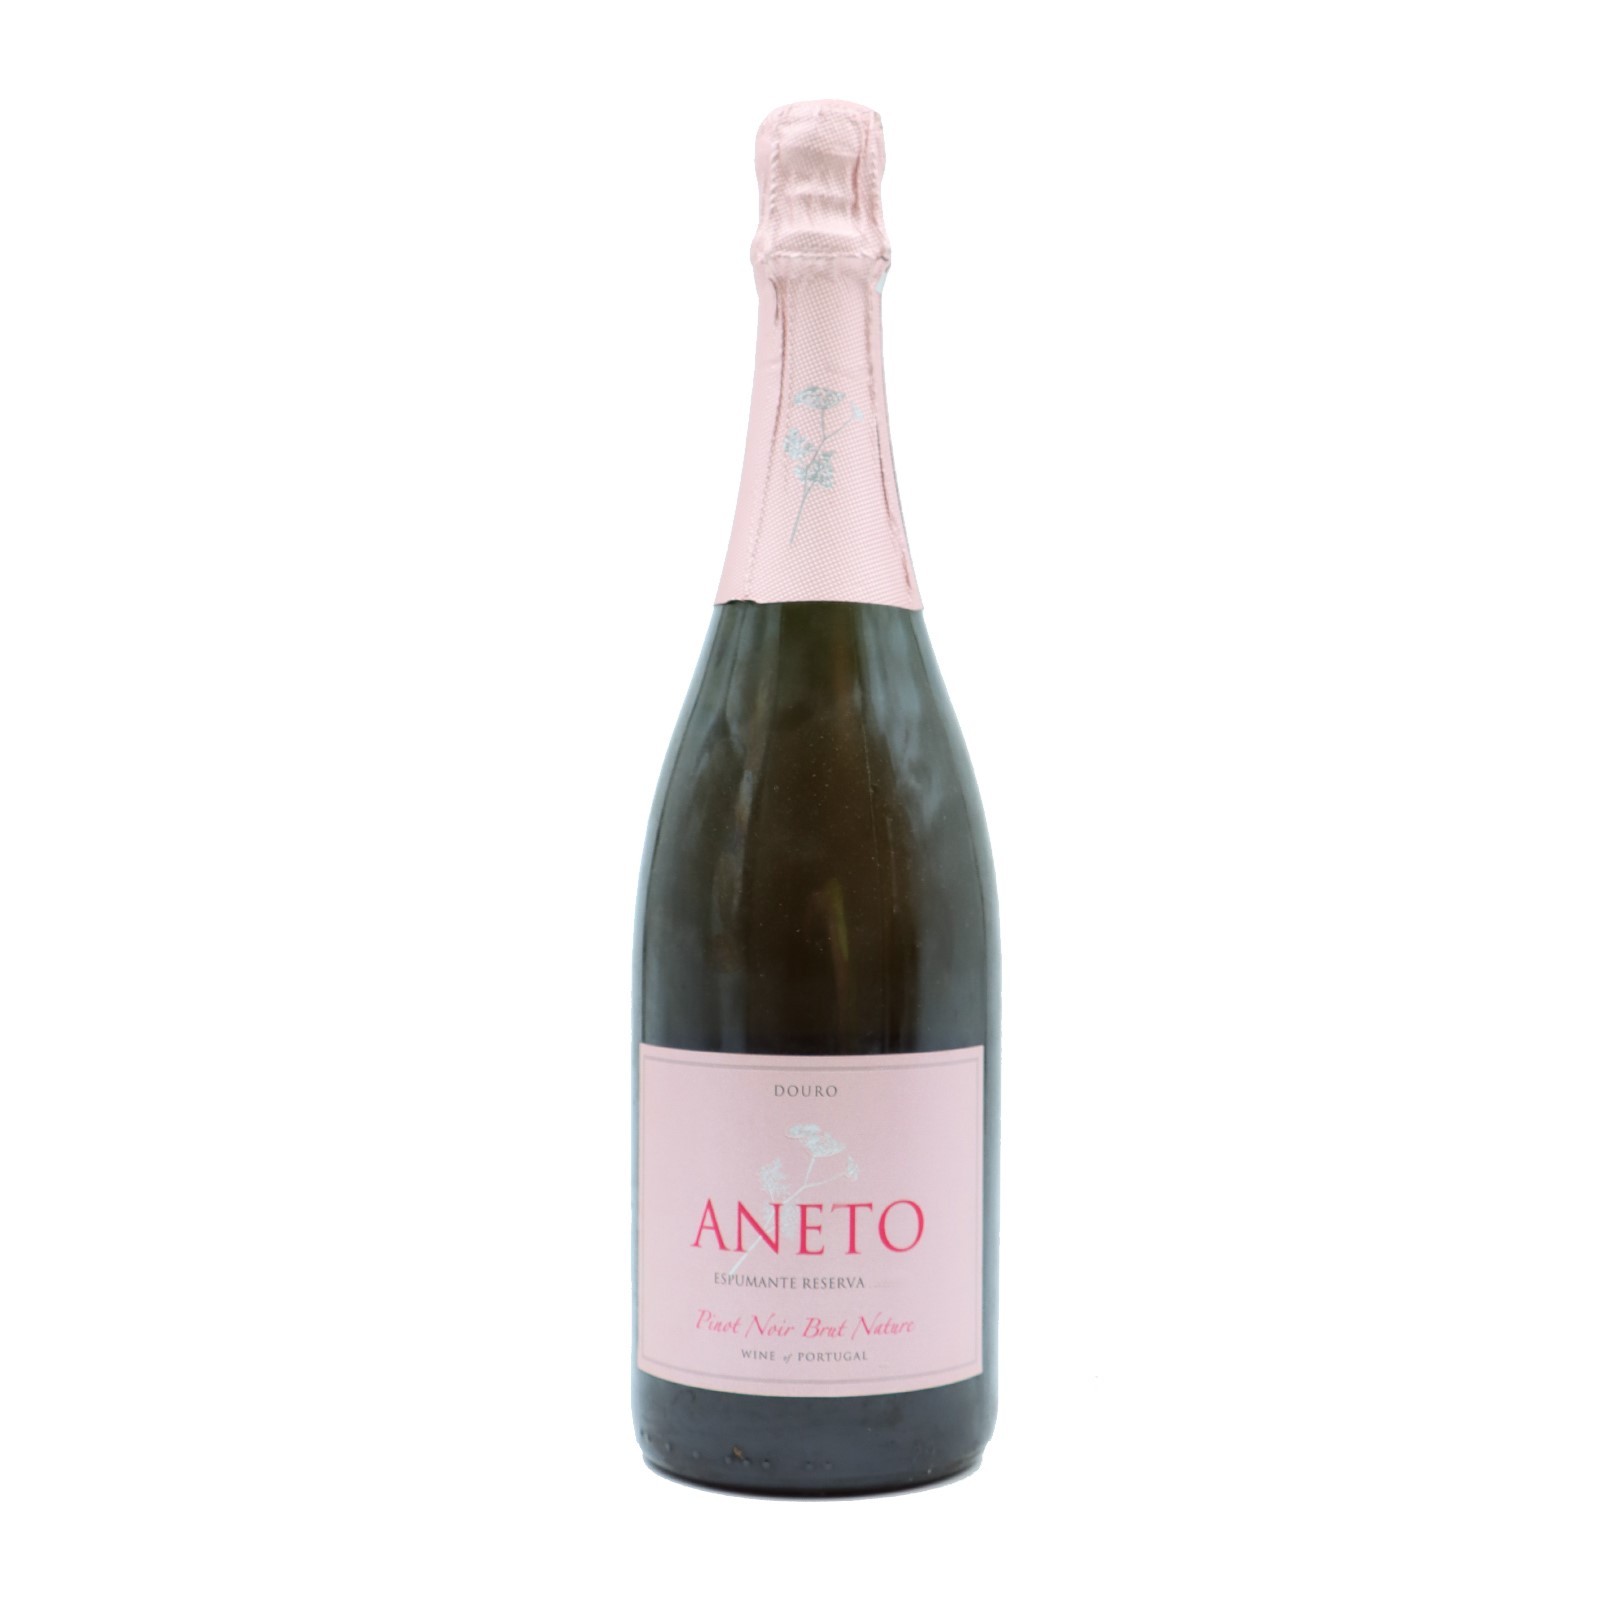 Aneto Pinot Noir Réserve Brut Nature Pétillant 2018